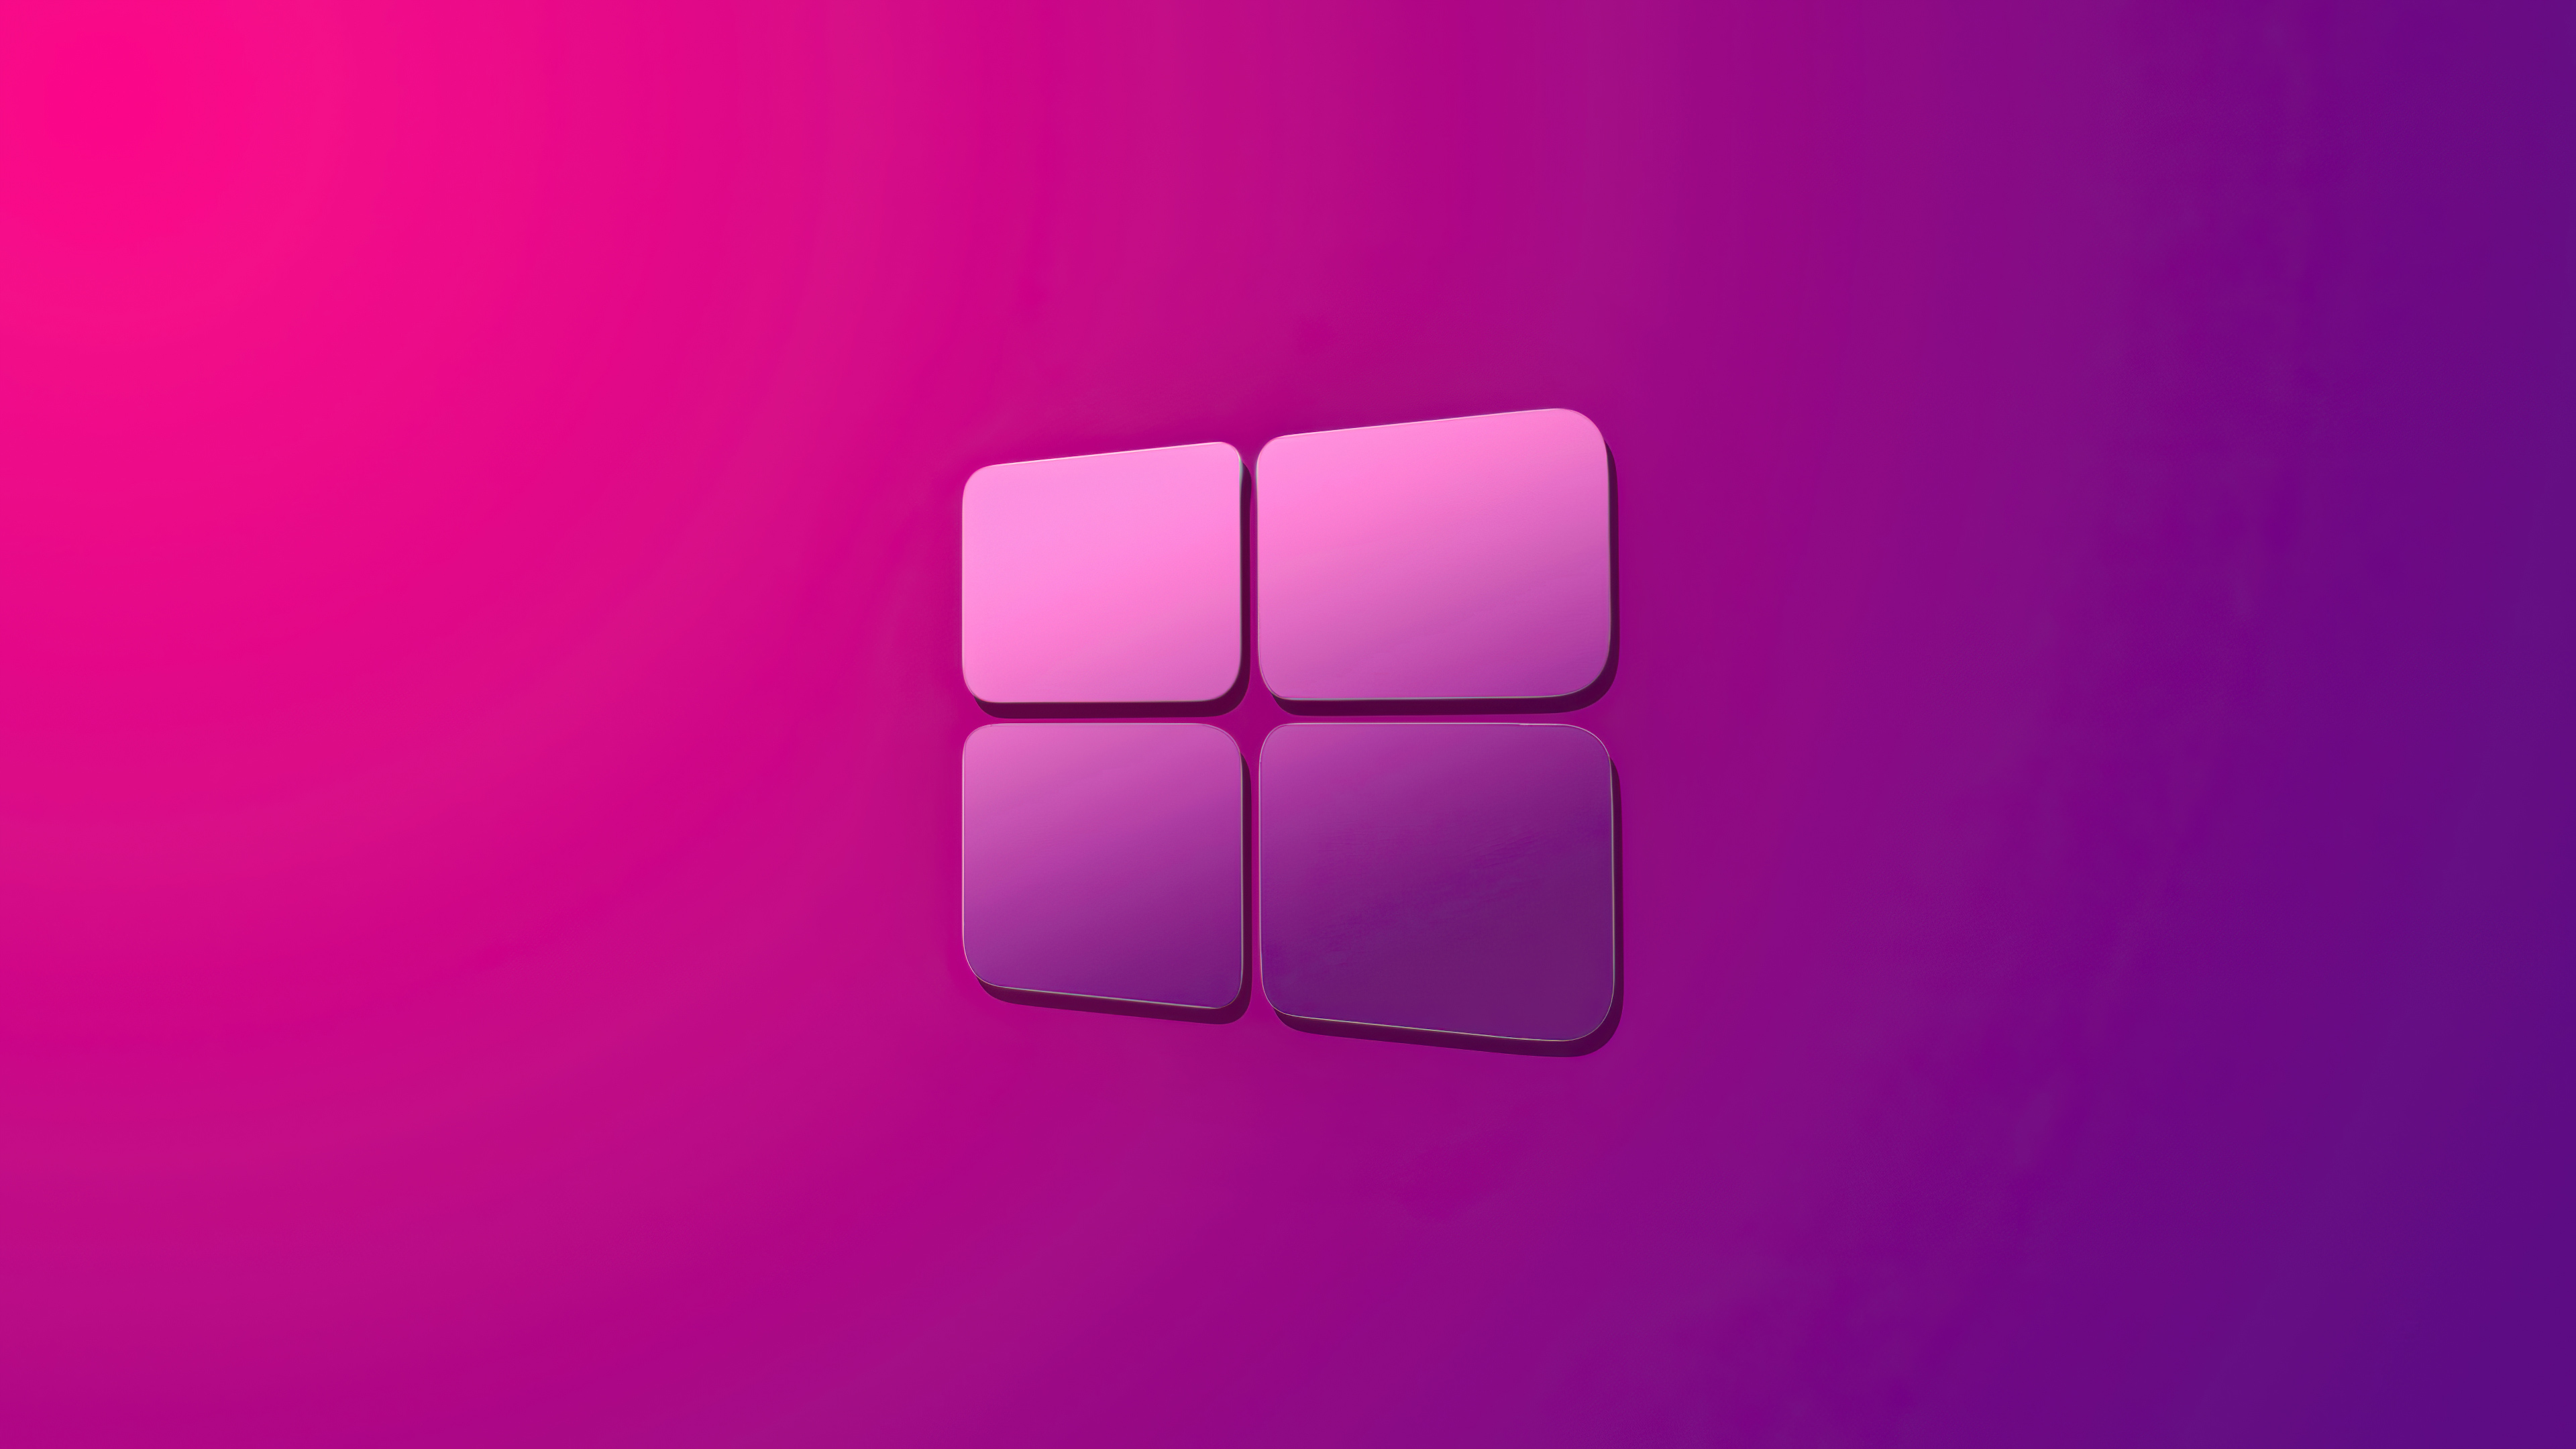 Windows 10 Purple Gradient Wallpaper Hd Minimalist 4k - vrogue.co